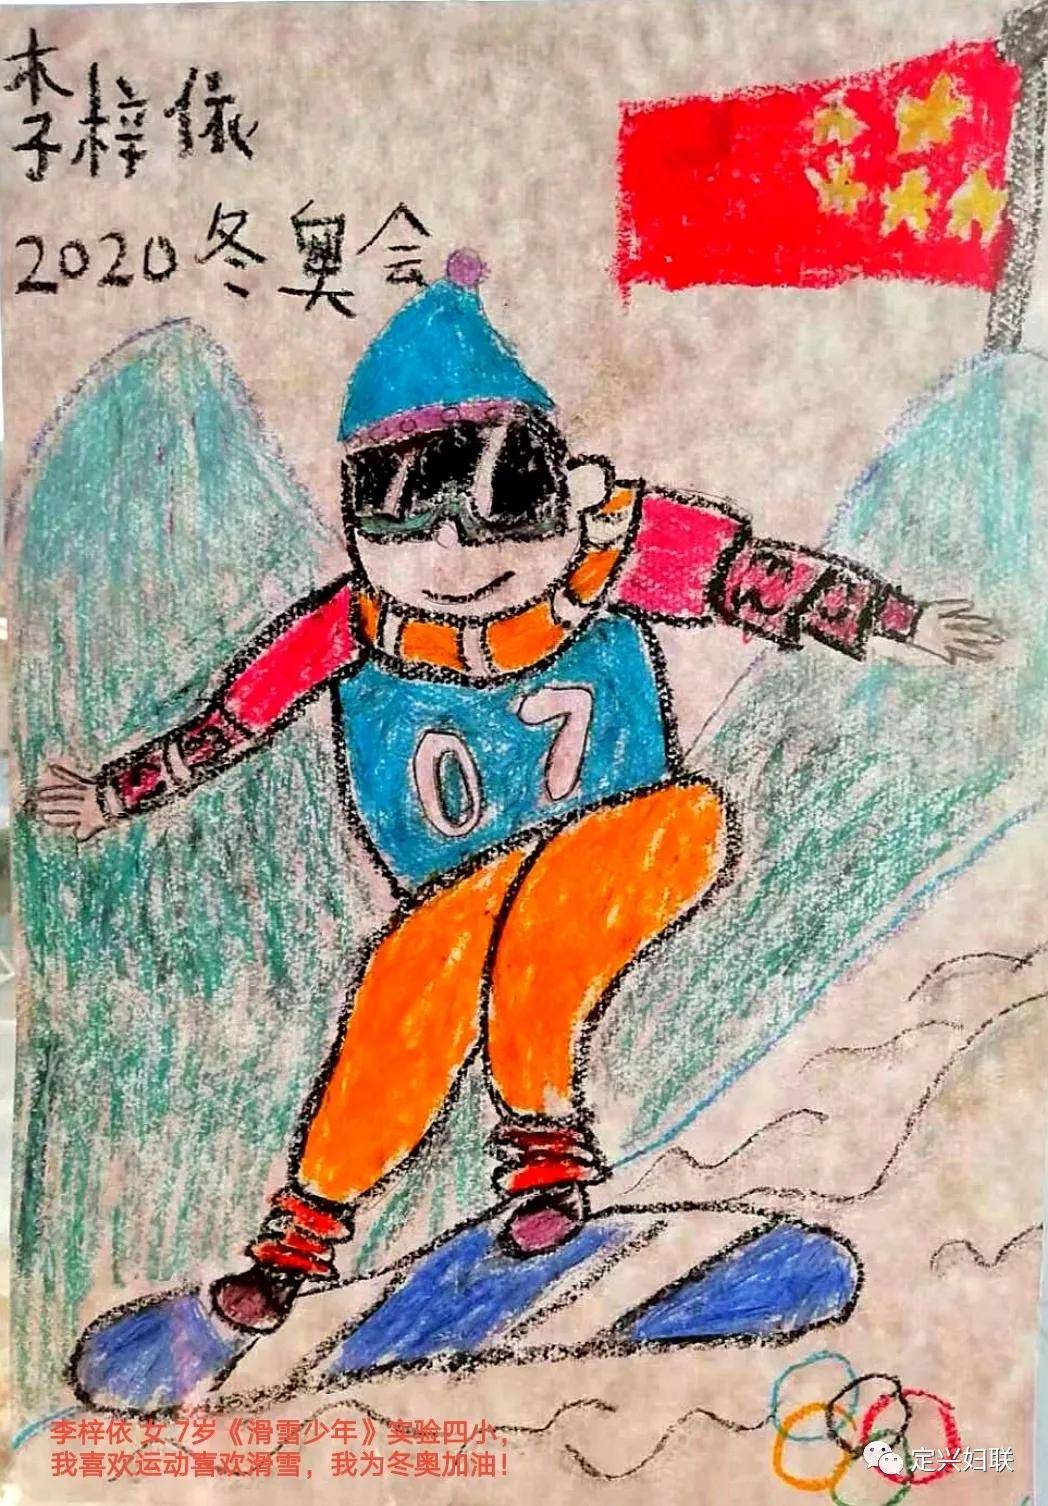 定兴县妇联助力河北省第三届冰雪运动会儿童绘画作品展播十